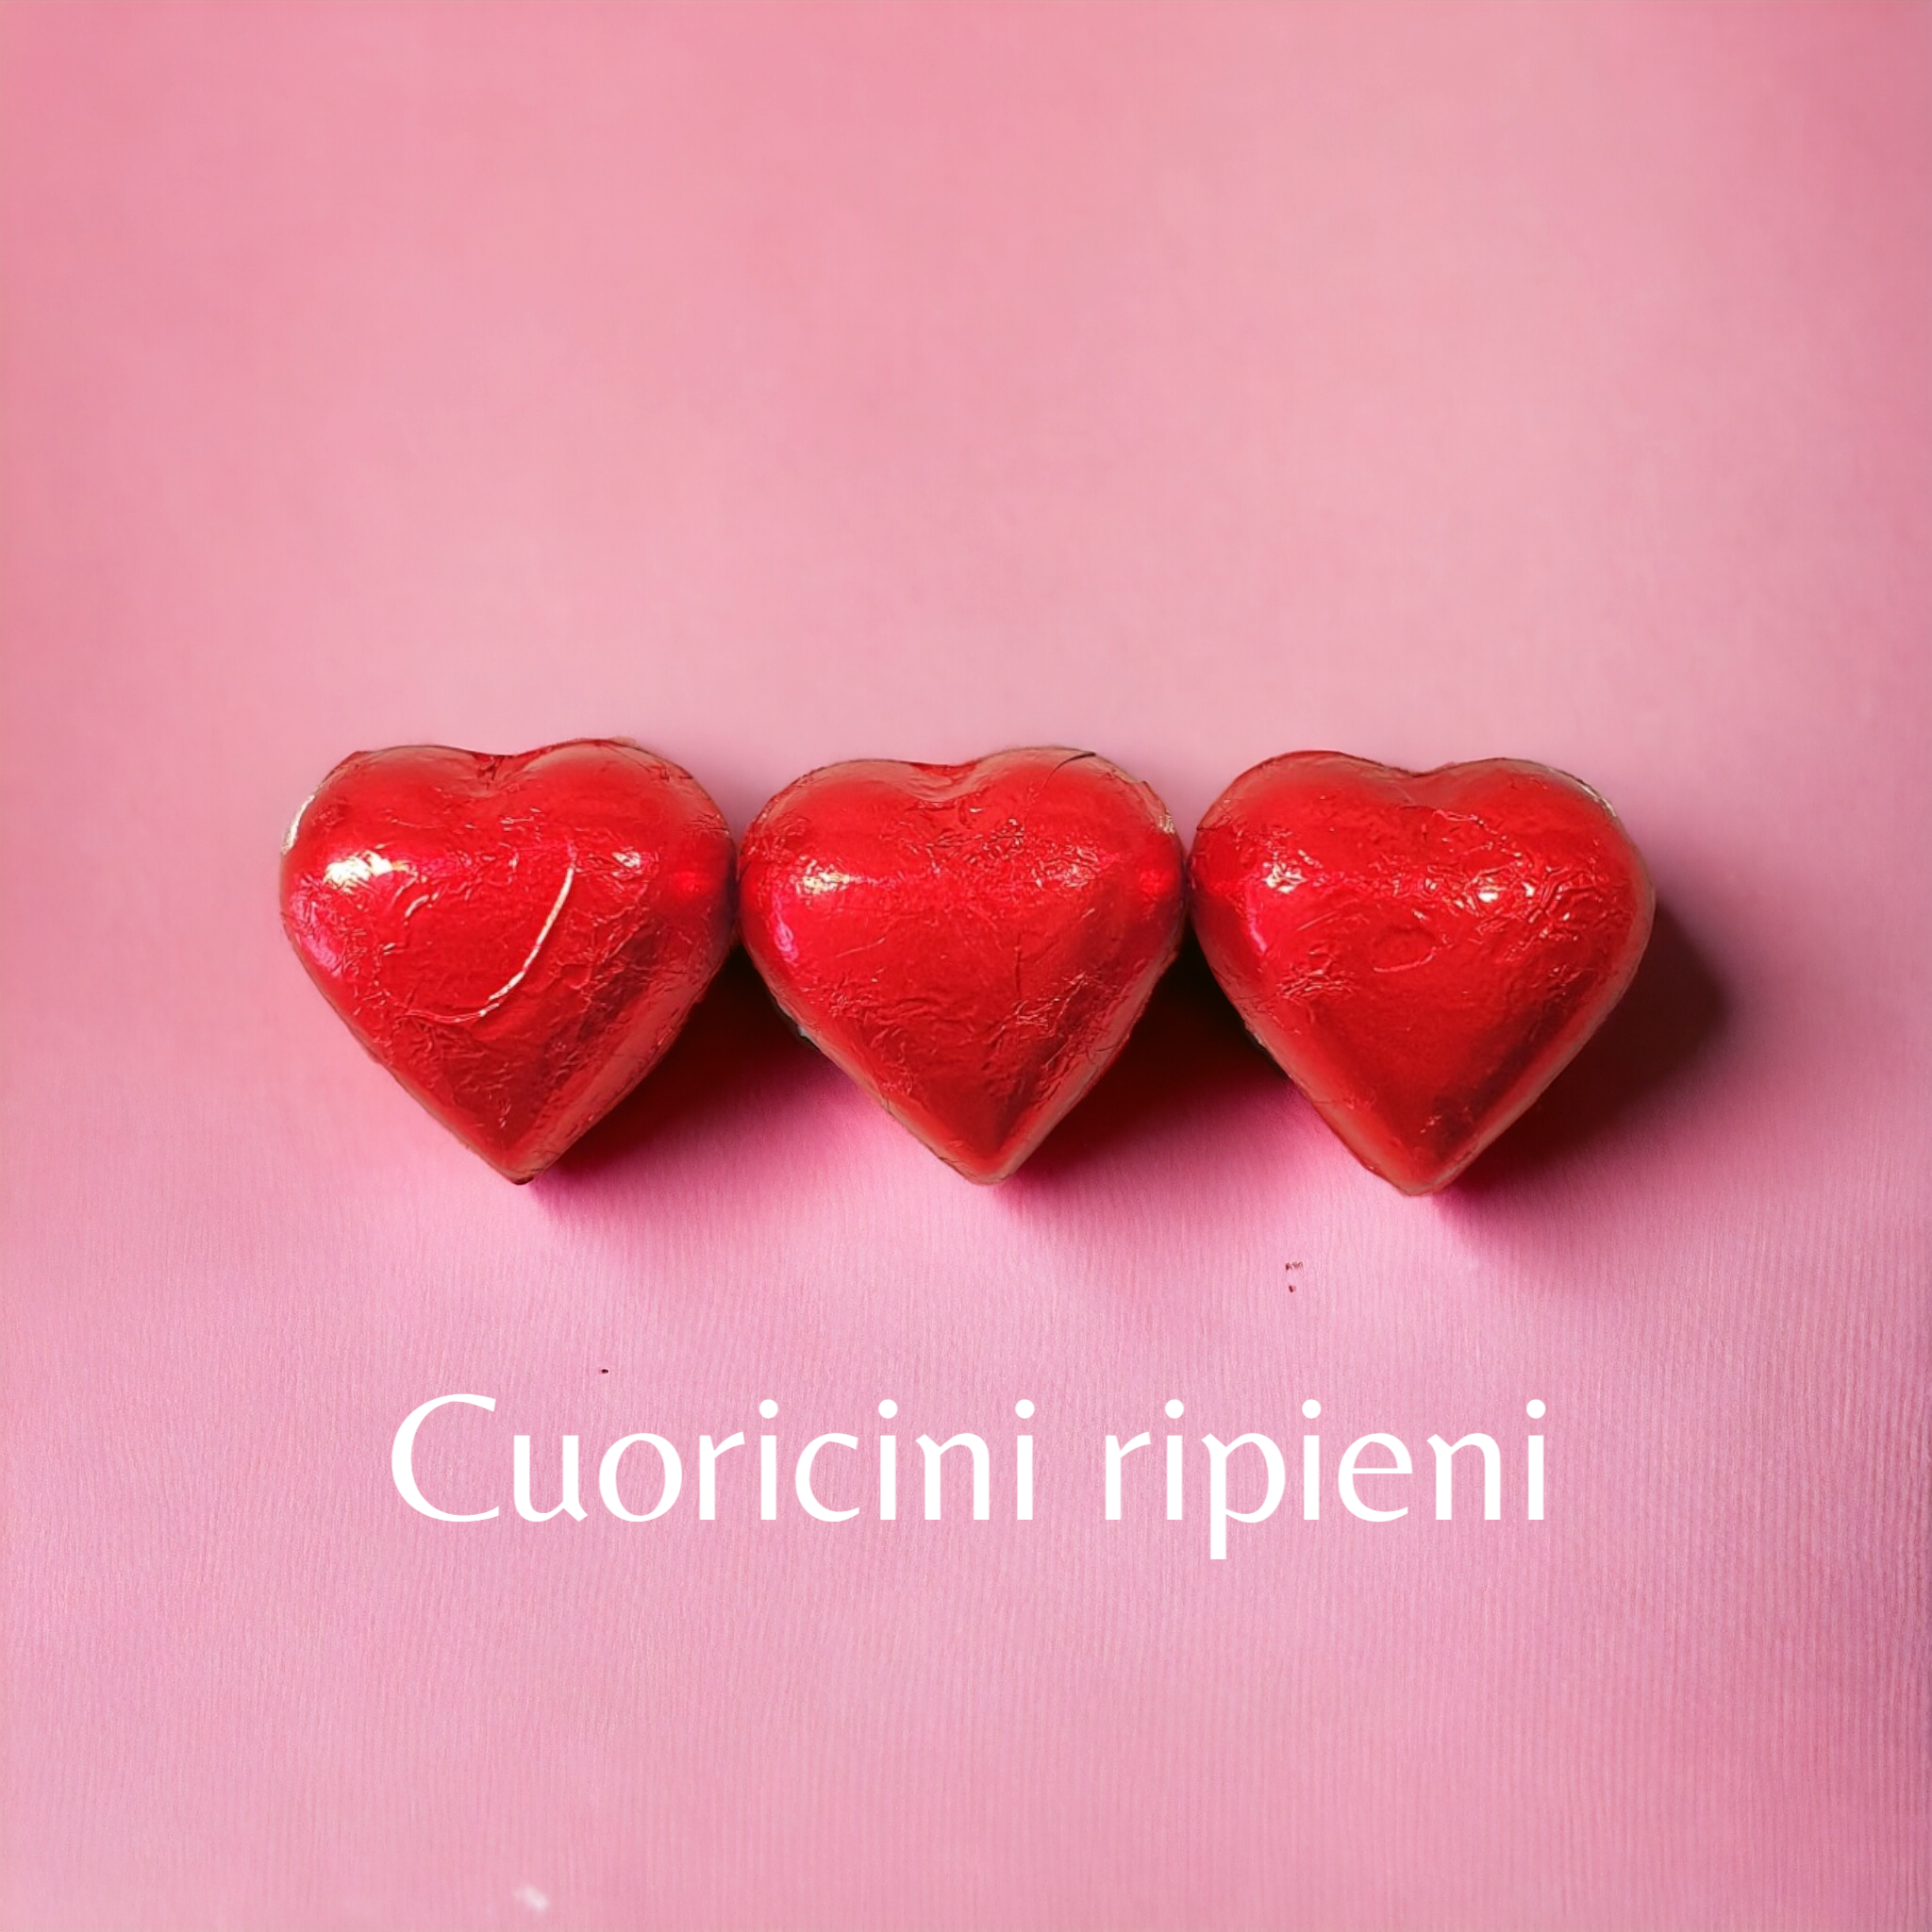 BOX I-LOVE-YOU cuore Fondente ripieno + 5 creme + 2 cioccolatini + rosa e dedica (Lim. Edition)